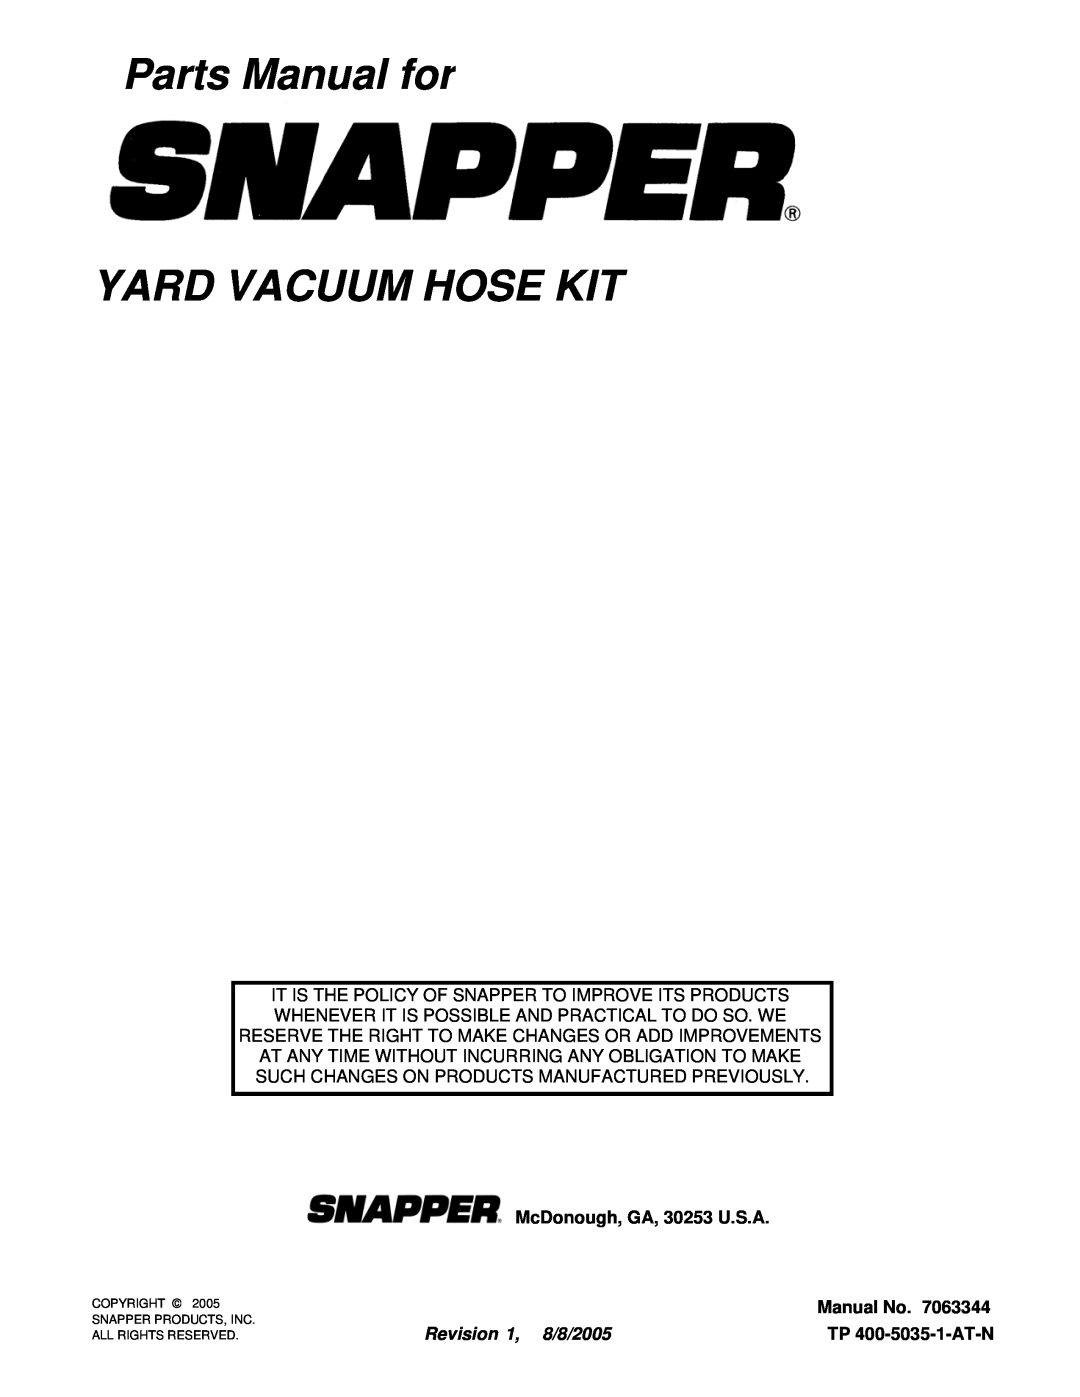 Snapper 7063344 manual Parts Manual for YARD VACUUM HOSE KIT, McDonough, GA, 30253 U.S.A, Manual No, Revision 1, 8/8/2005 